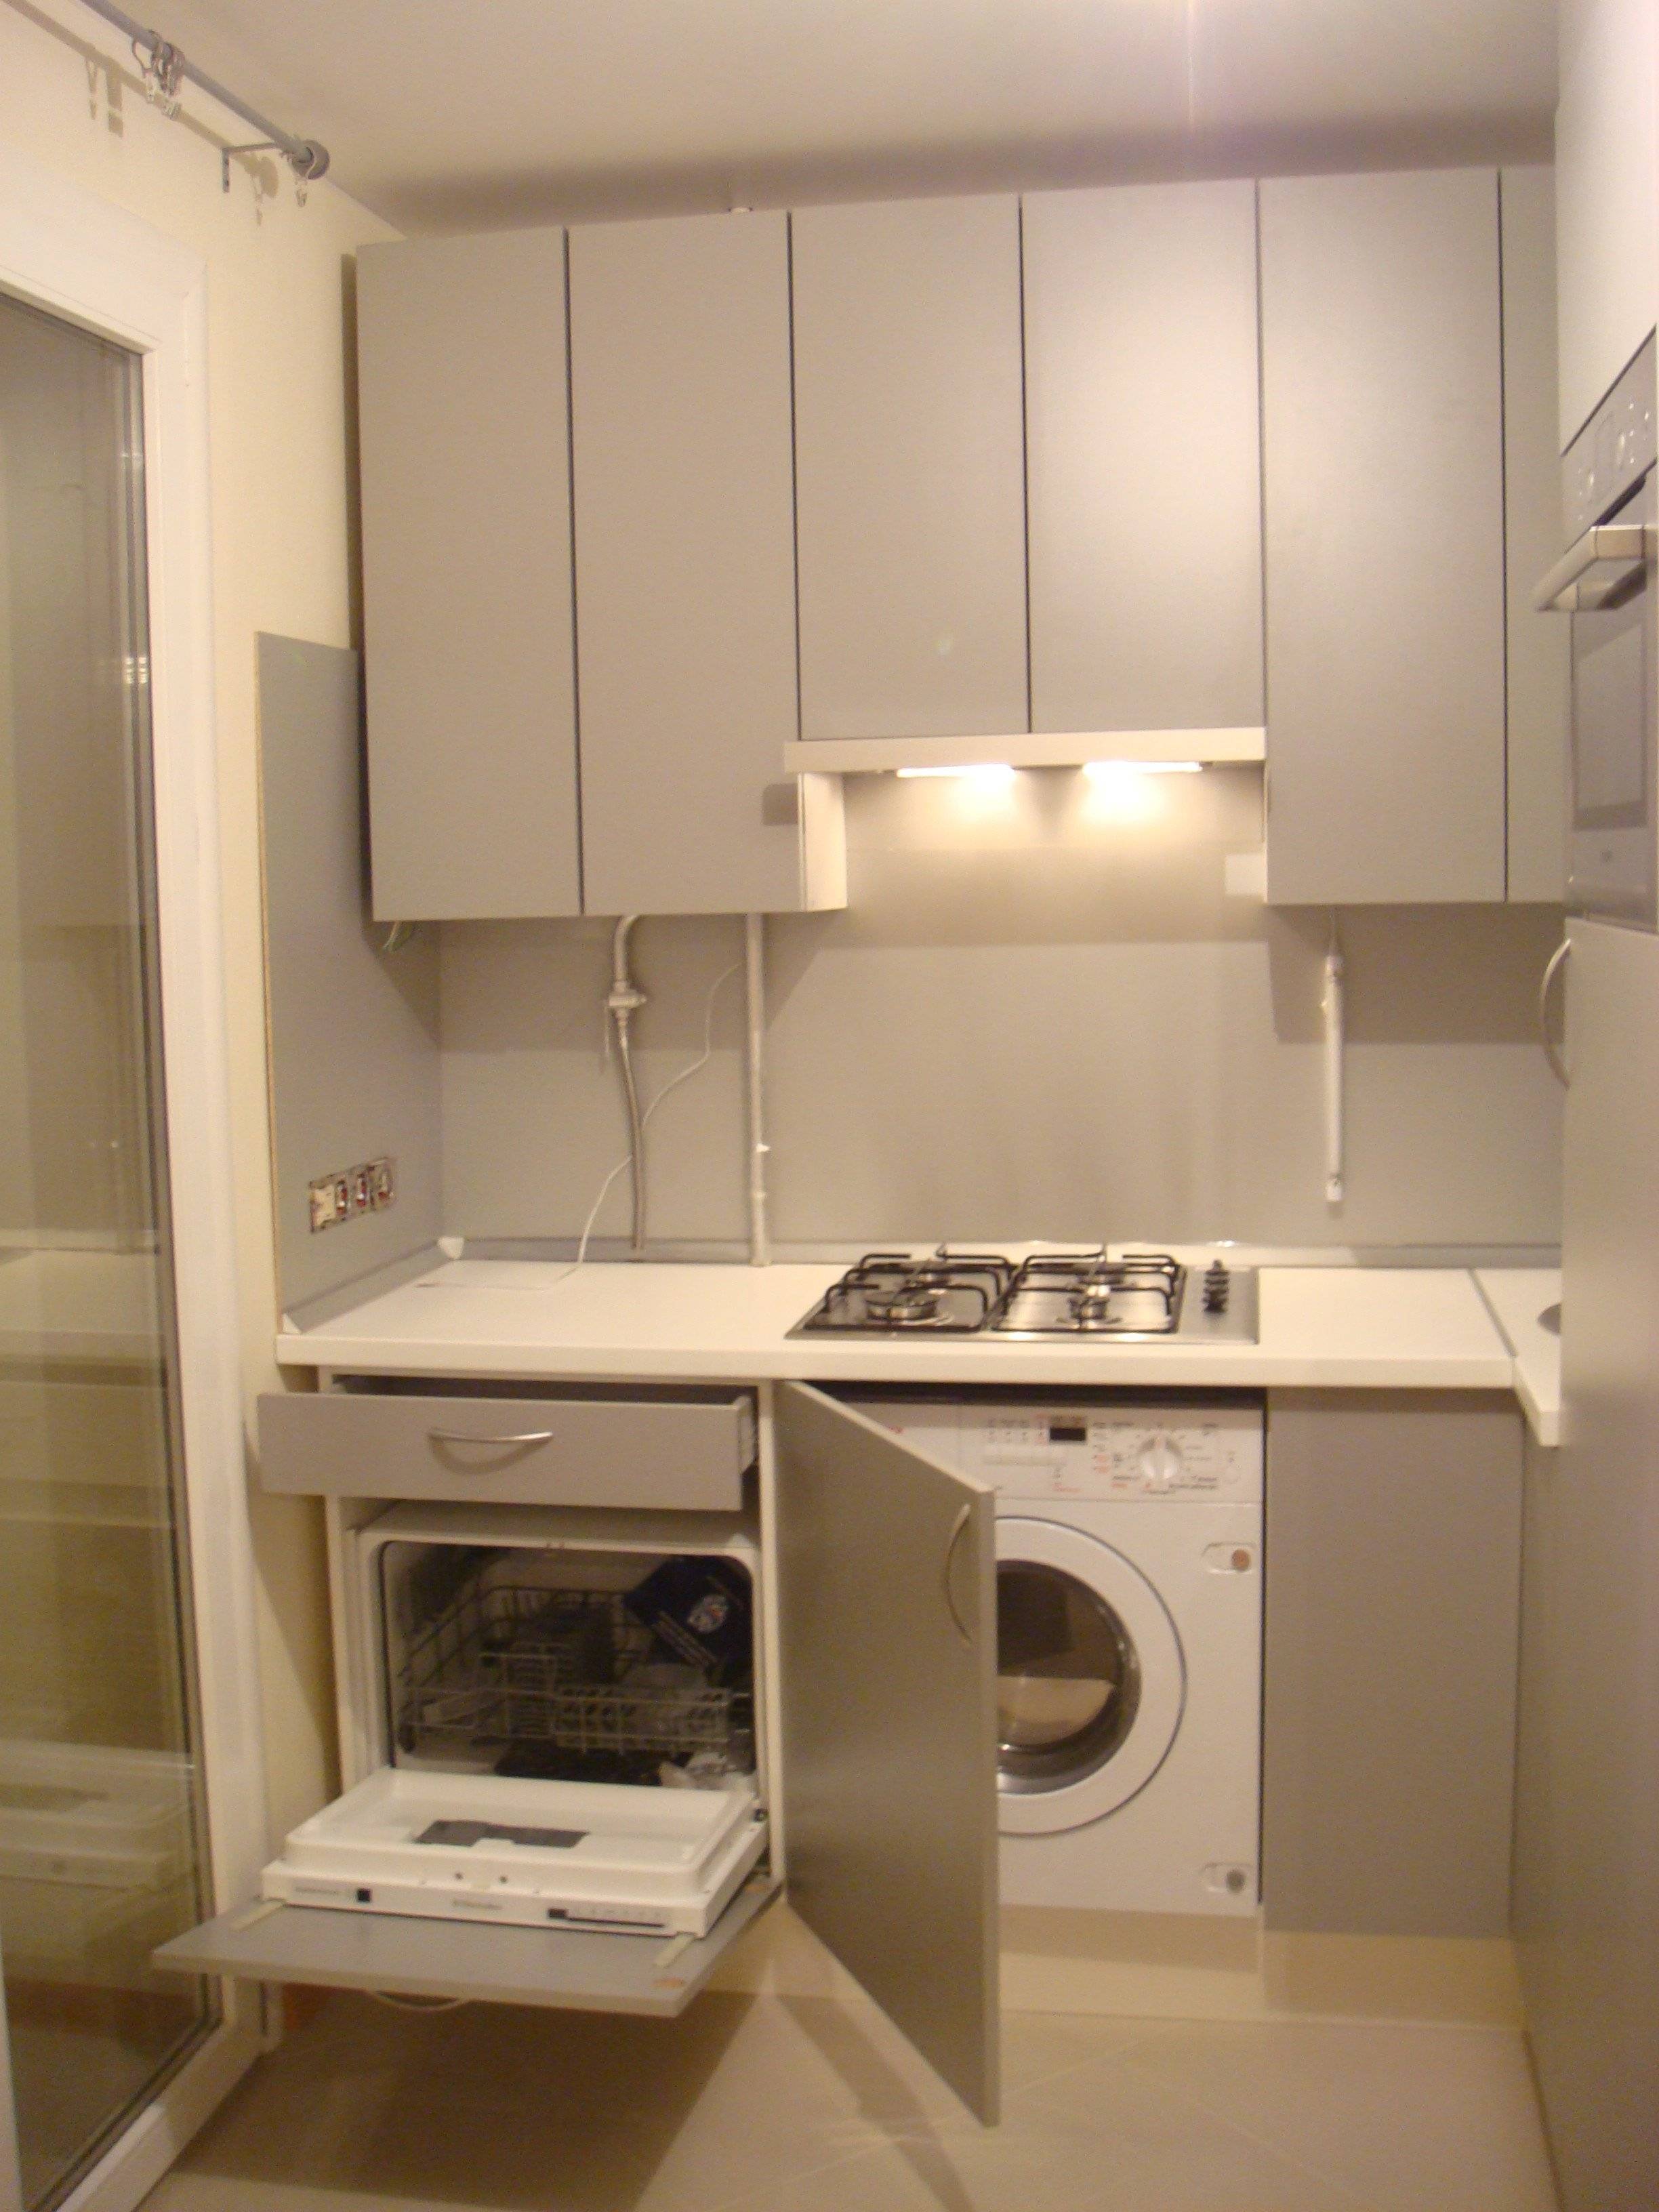 Планировка маленькой кухни со стиральной машиной